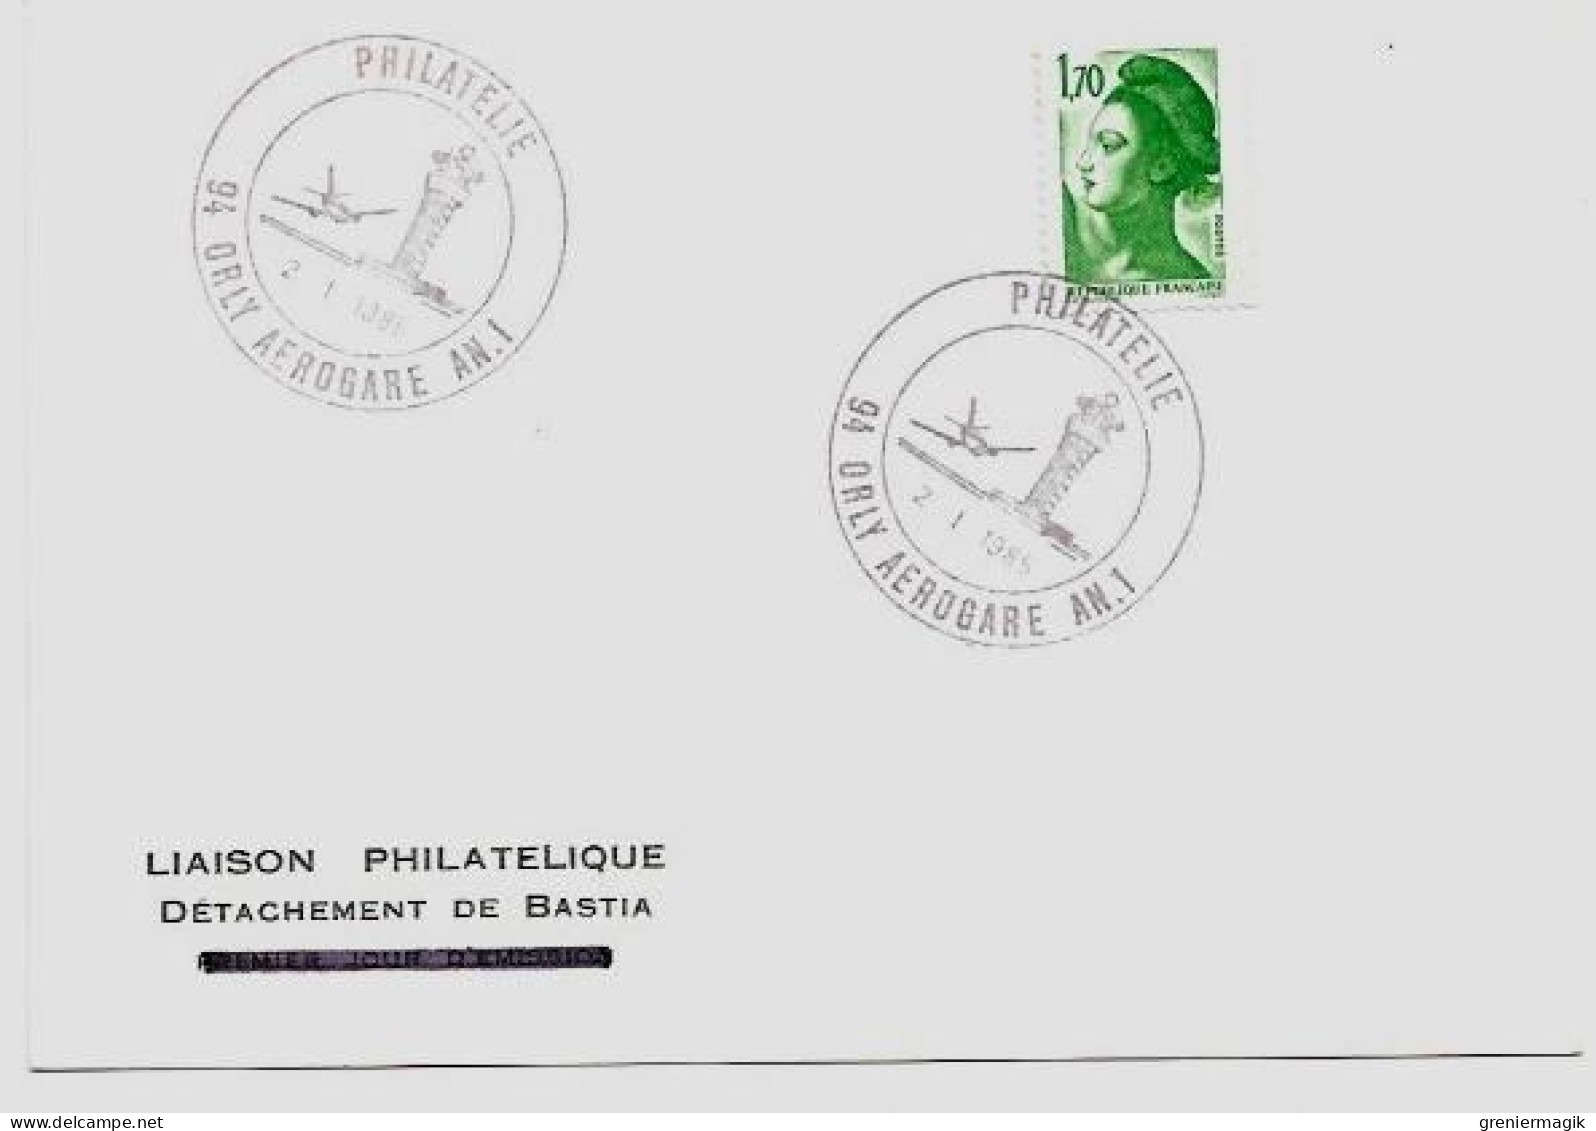 N°2318 Cachet Philatélie Orly Aérogare AN. 1 2/1/1985 (Tour De Contrôle) - Liaison Philatélique Bastia Liberté 1,70 Vert - Cachets Provisoires